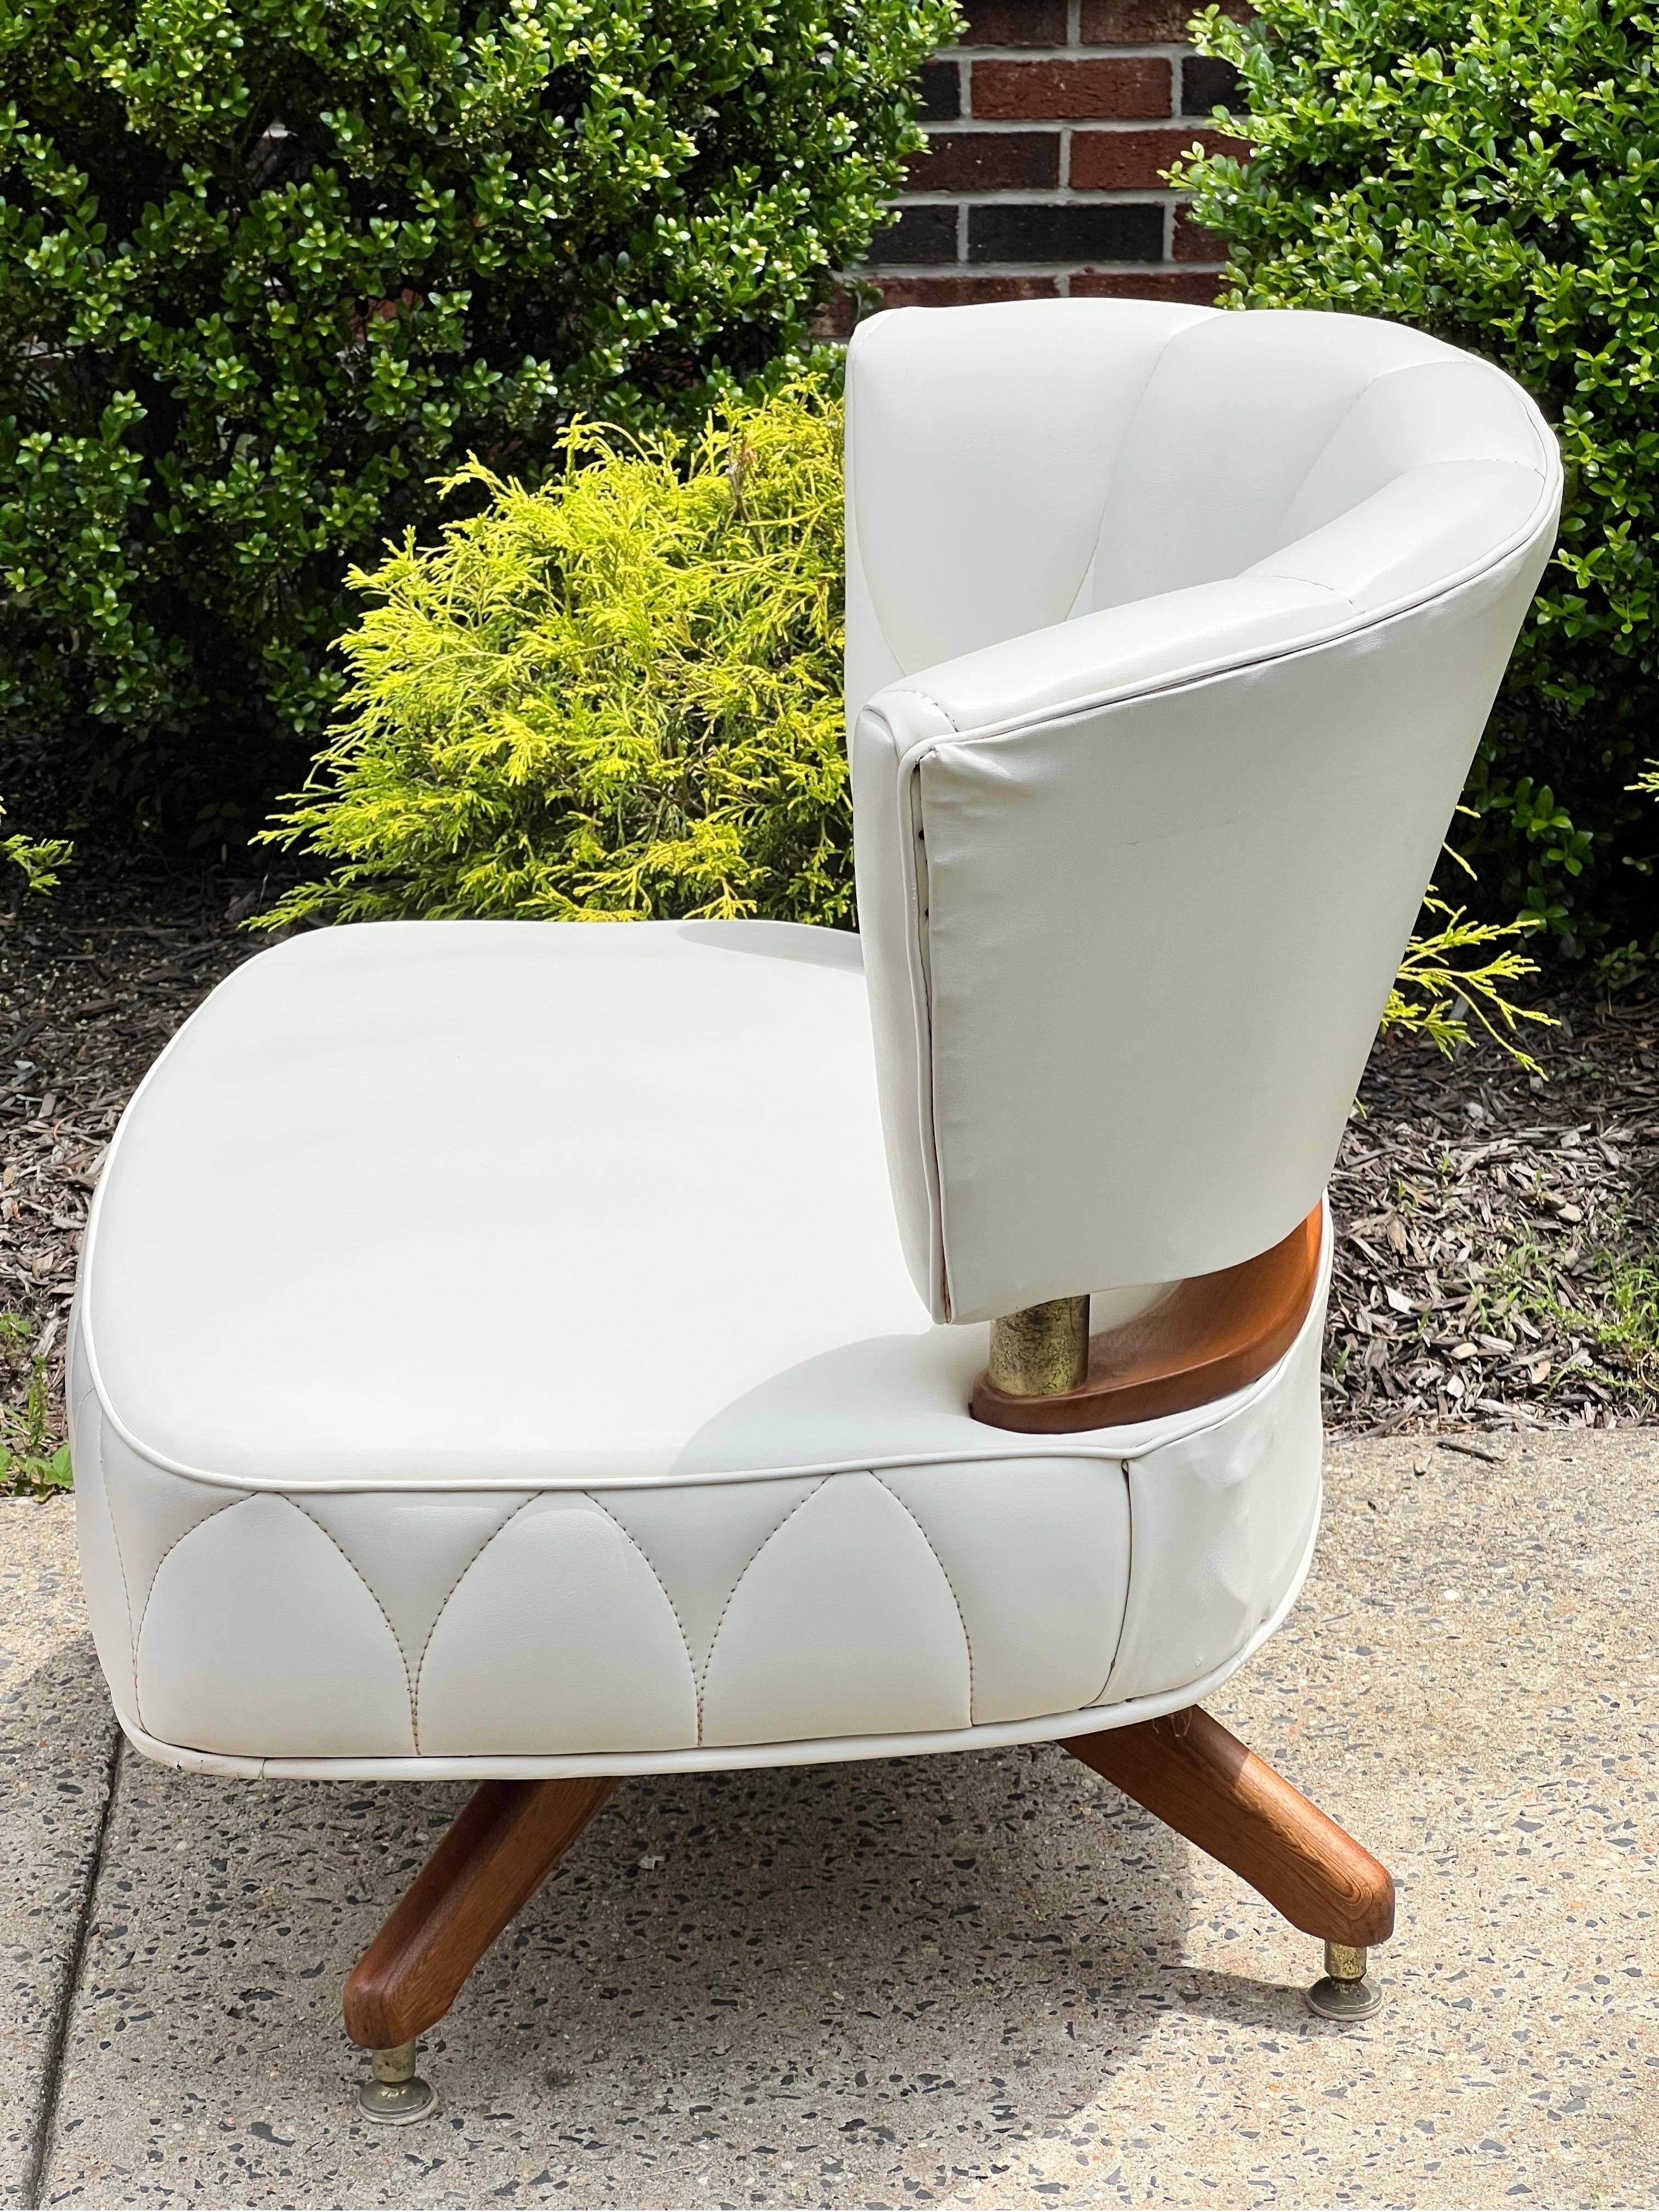 Fabuleux fauteuil pivotant vintage de Kroehler, 1962. 

Une magnifique chaise recouverte d'un simili-cuir blanc à la teinte crémeuse et vibrante, avec des détails de couture uniques. La couleur de la sellerie a conservé sa vitalité et ne présente